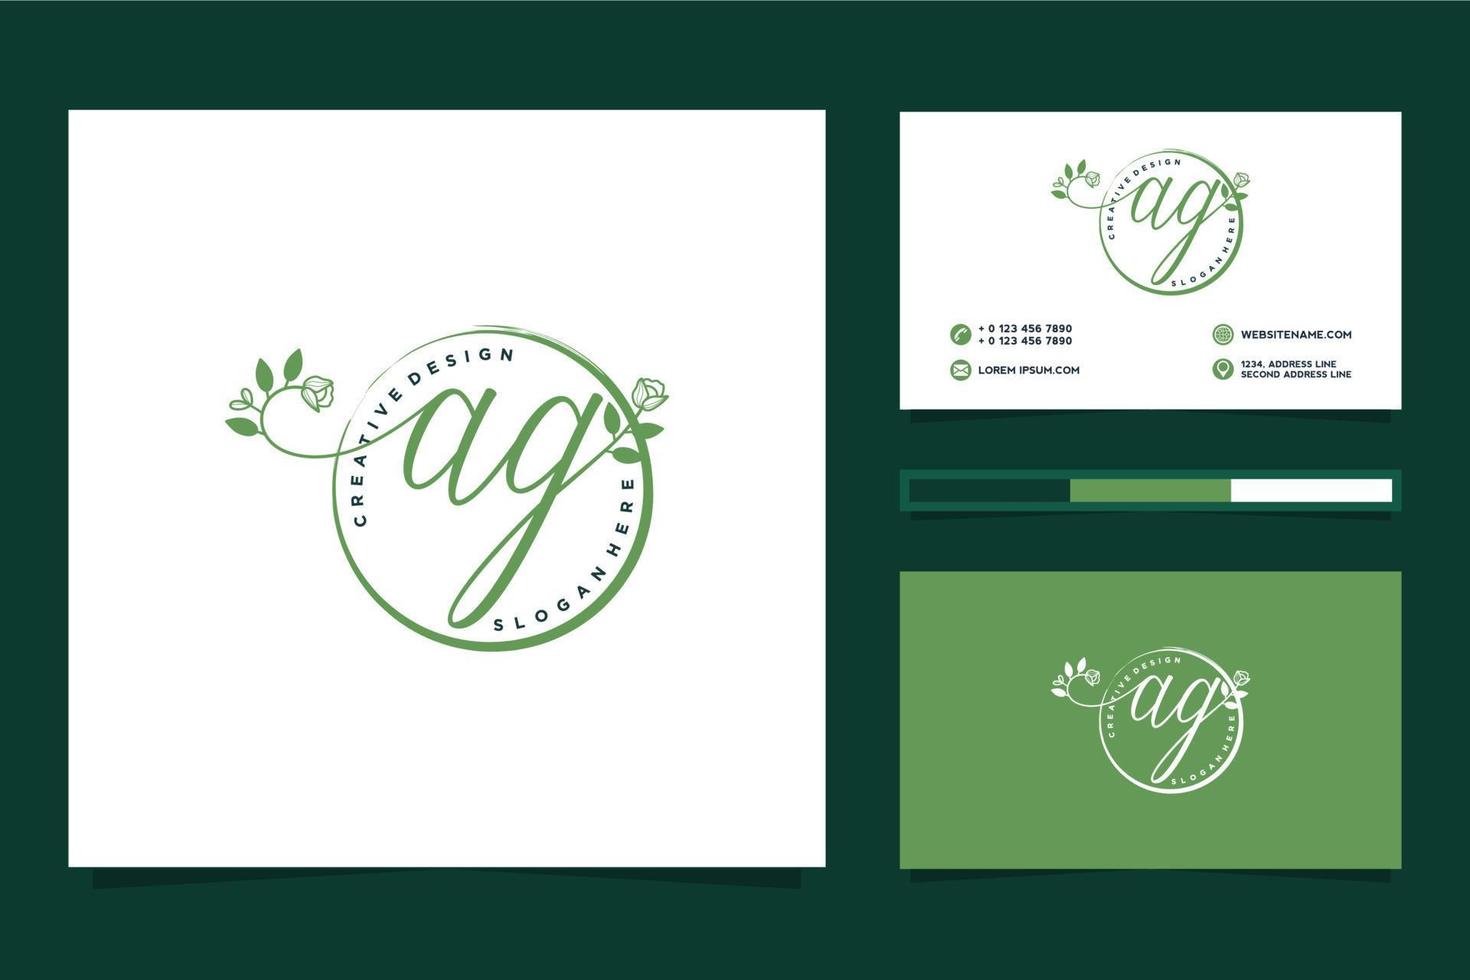 colecciones iniciales de logotipo femenino ag y vector premium de plantilla de tarjeta de visita